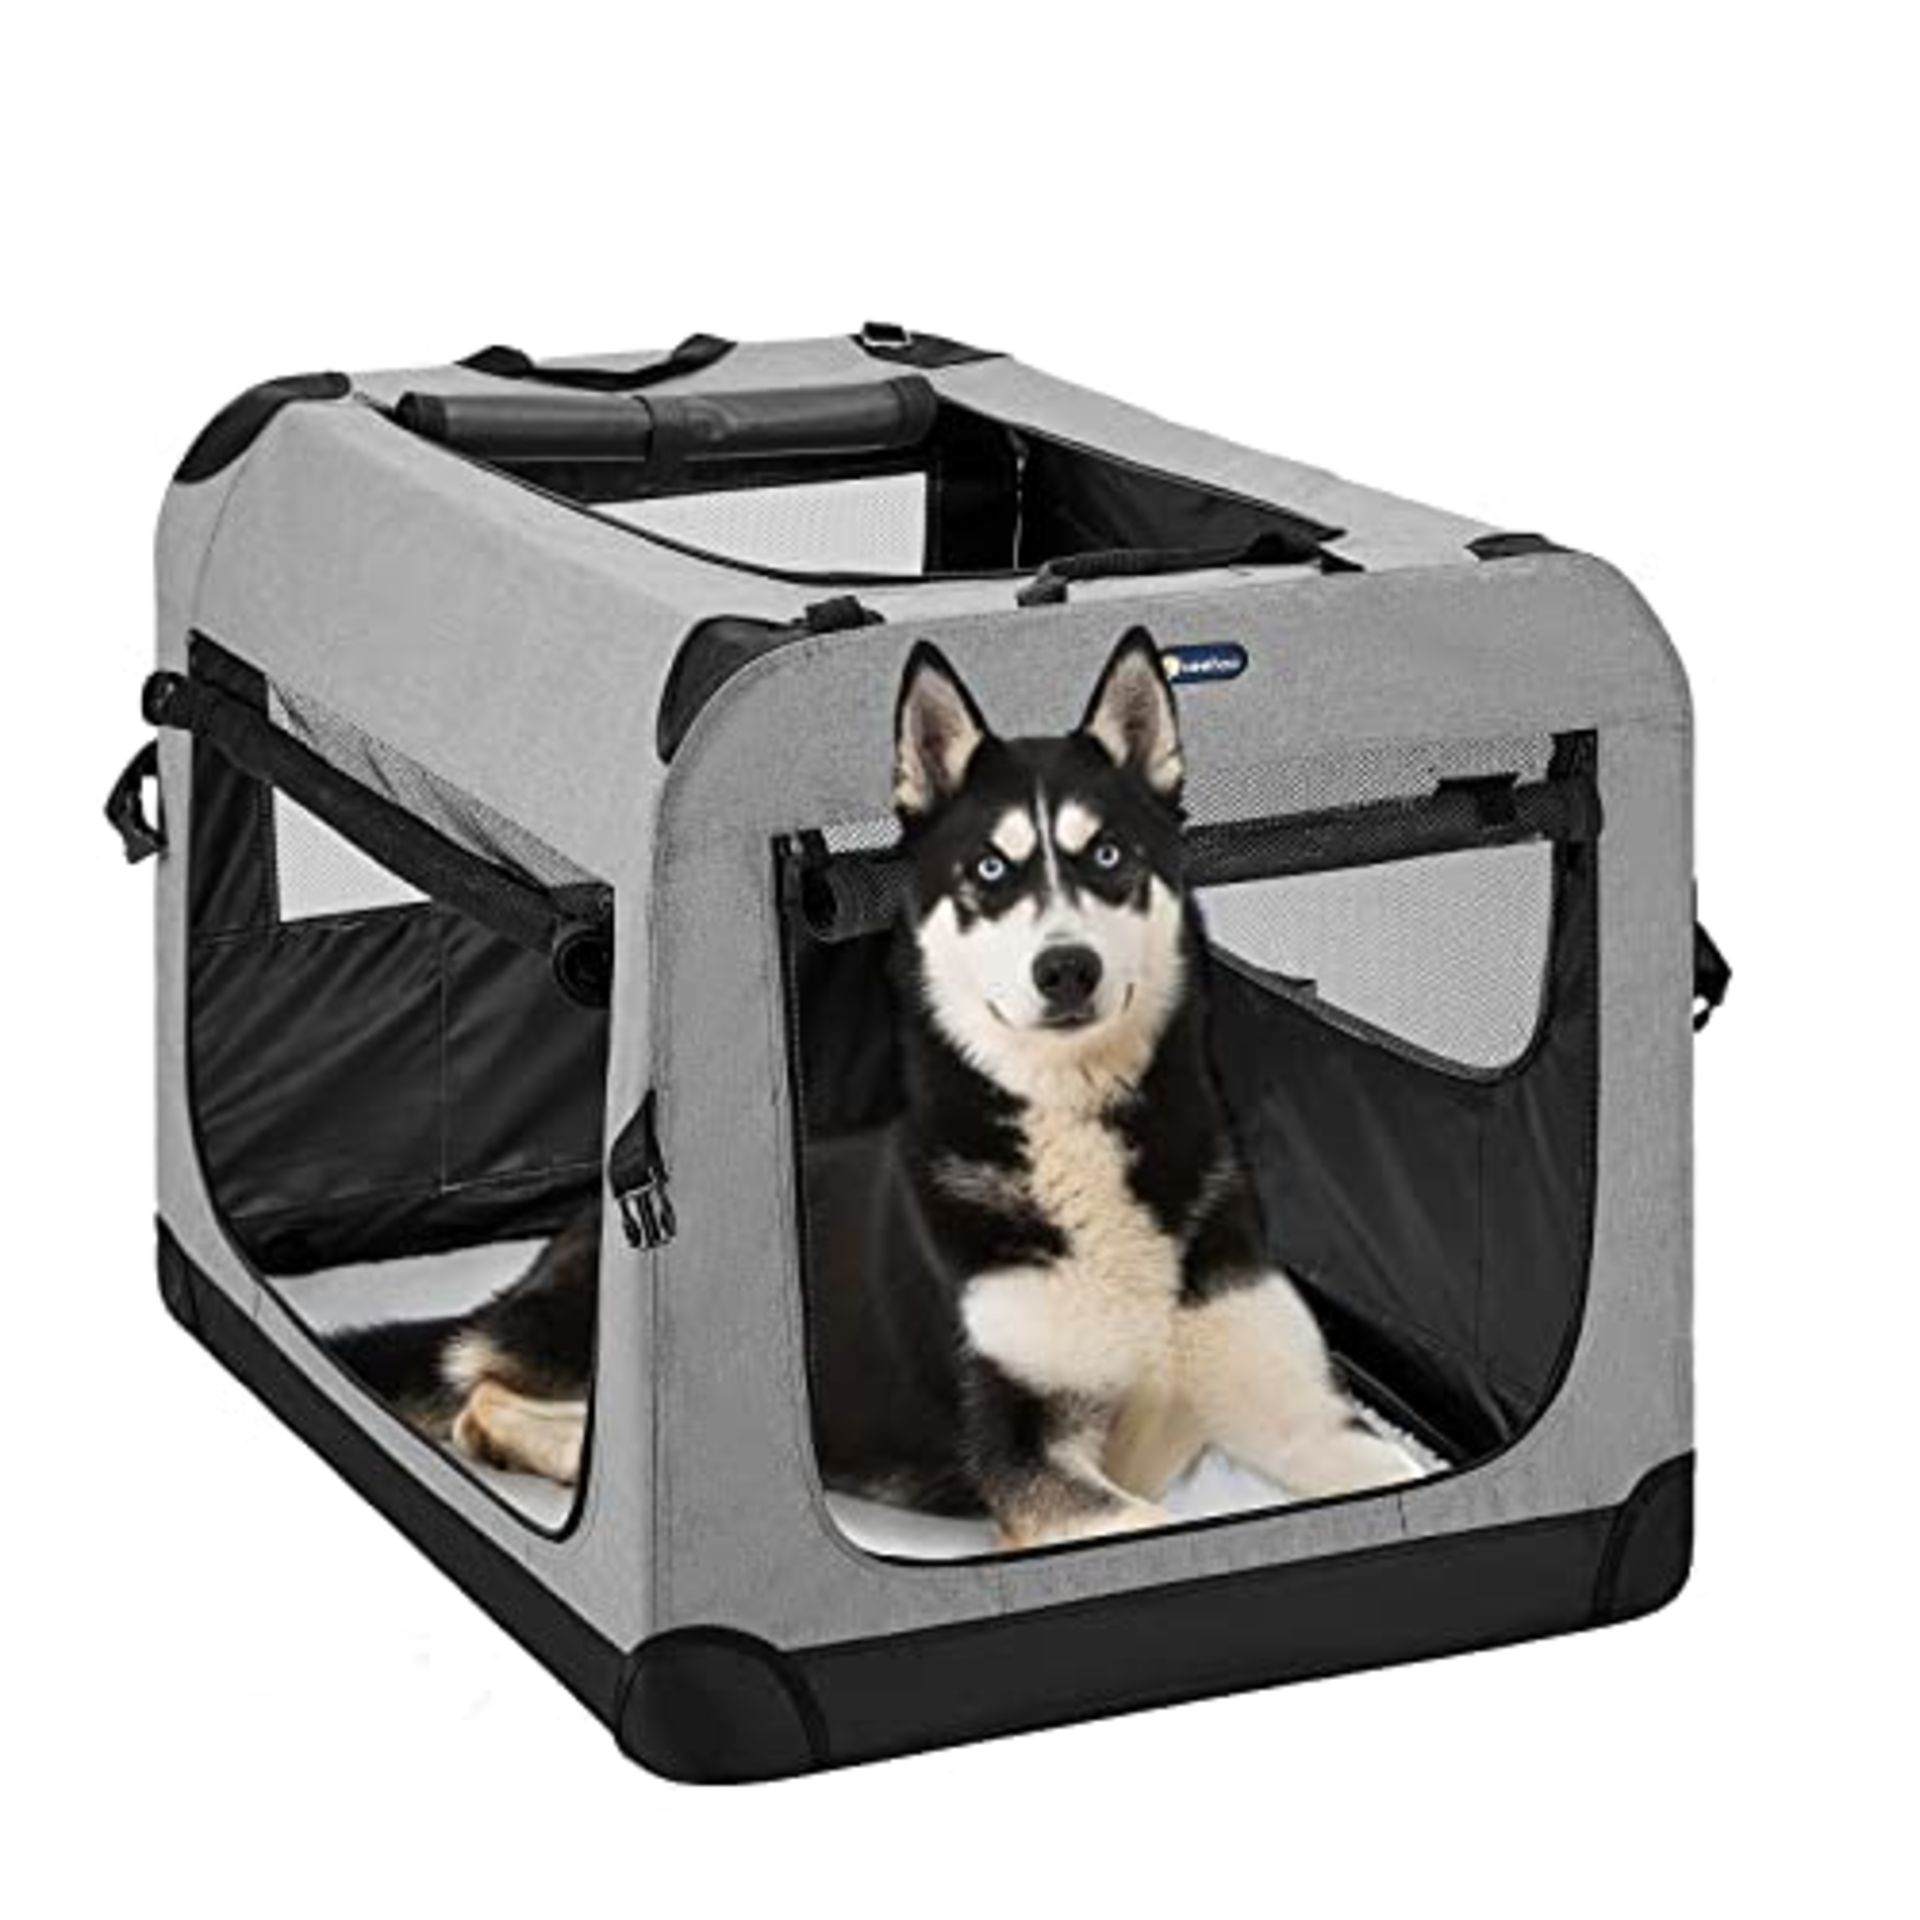 RRP £83.74 Veehoo Folding Soft Dog Crate